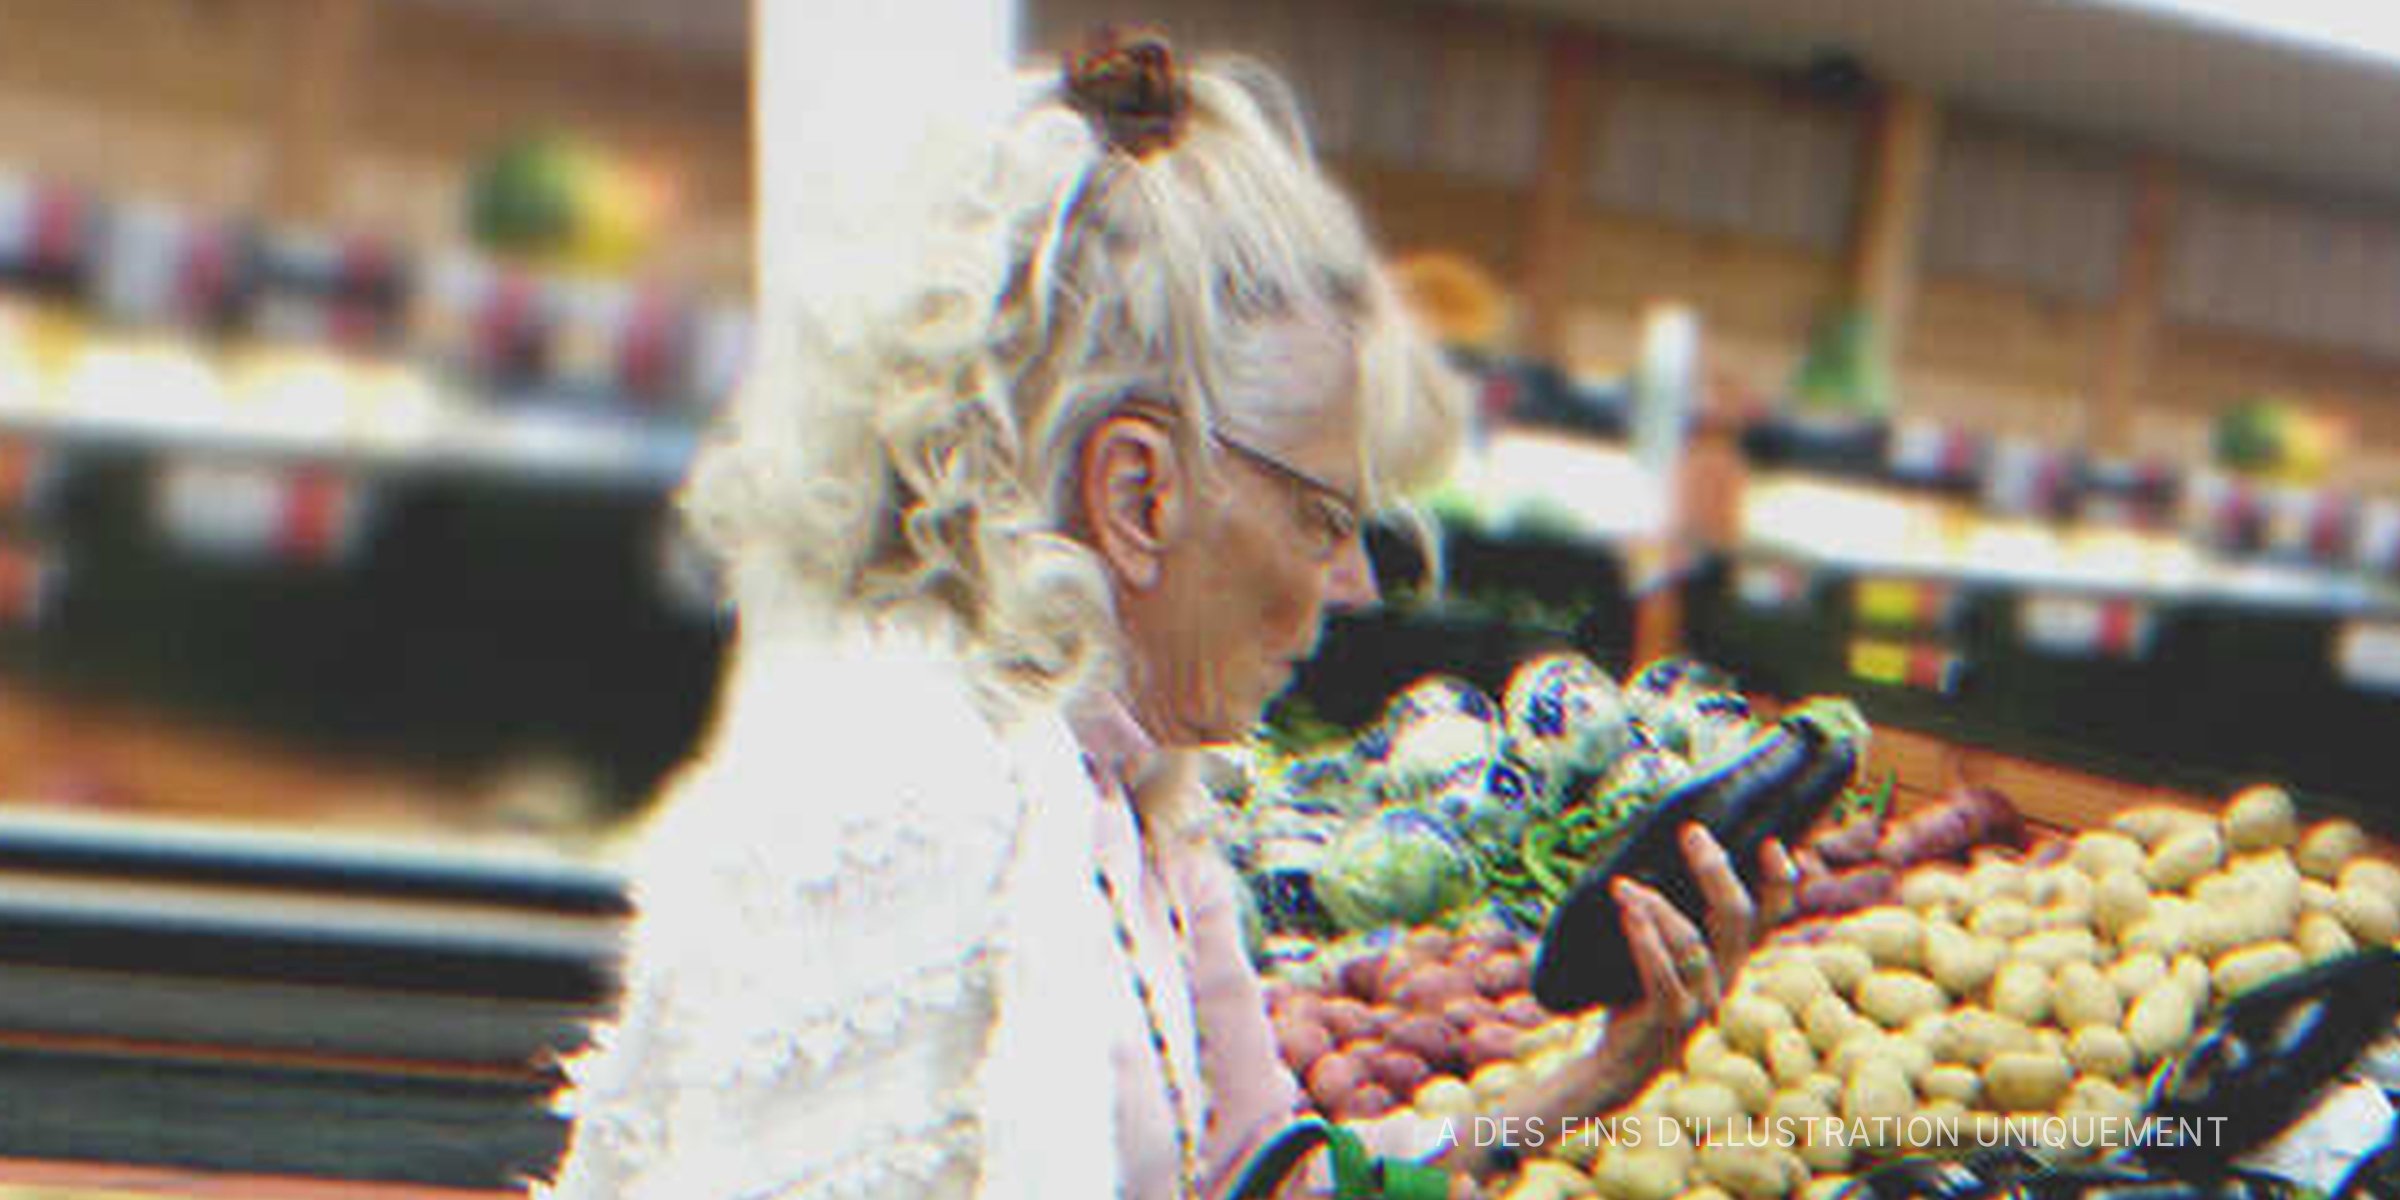 Une pauvre vieille dame qui achète des légumes | Source : Getty Images